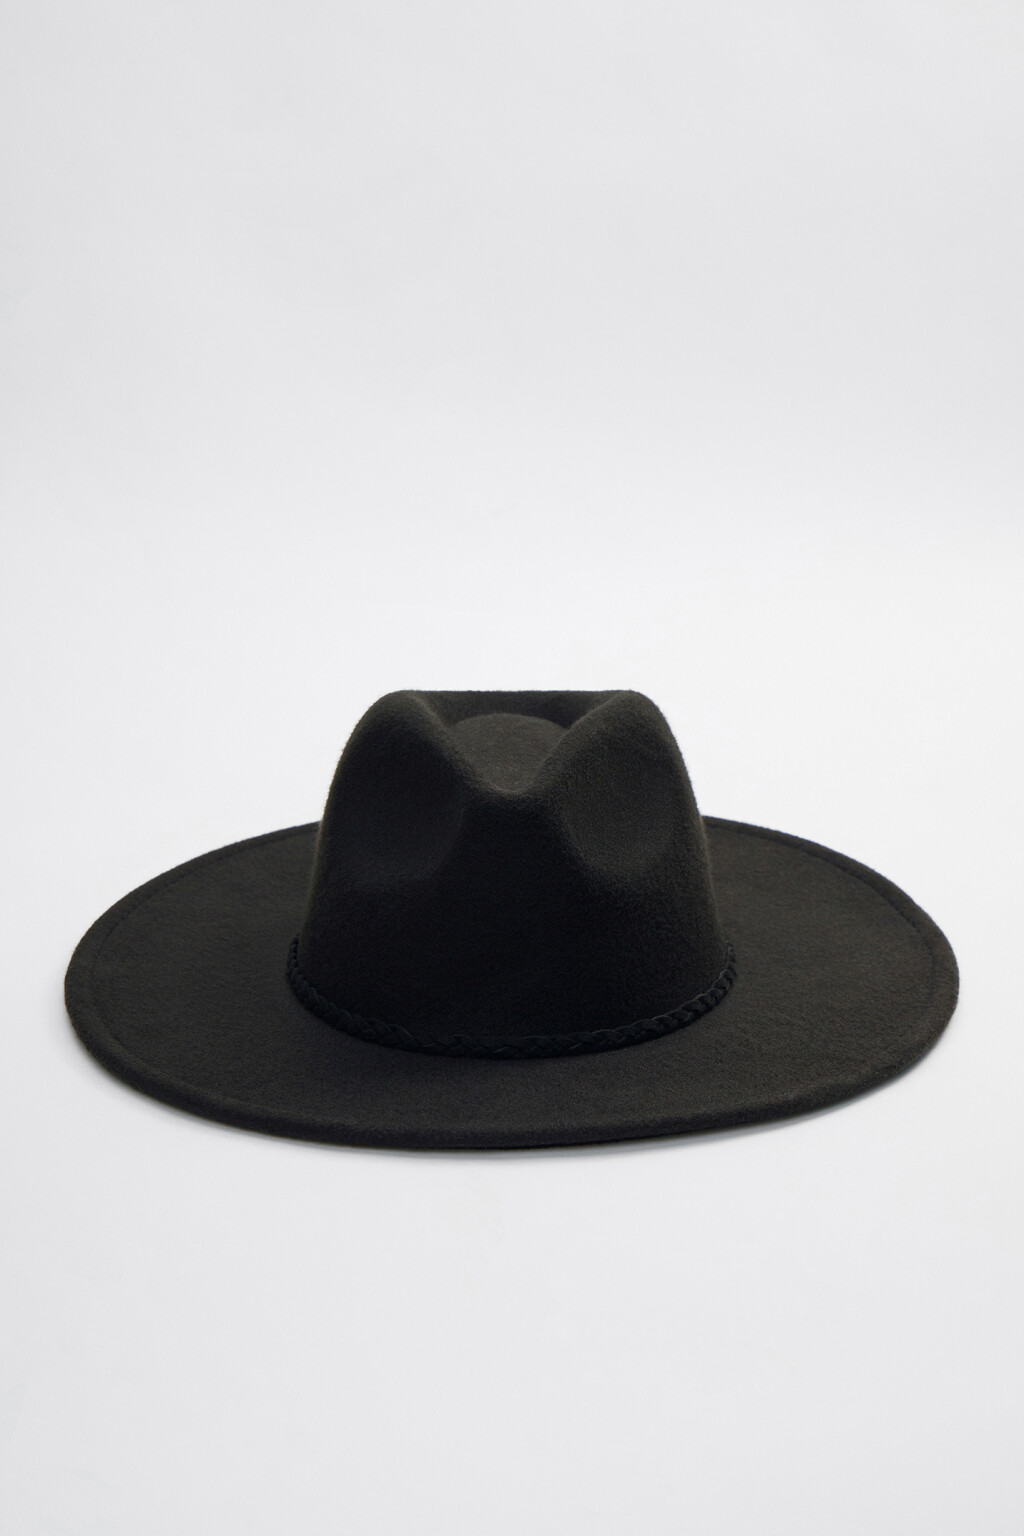 Шляпа-федора фетровая с широкими полями 2316018011, цвет: черный (50 .